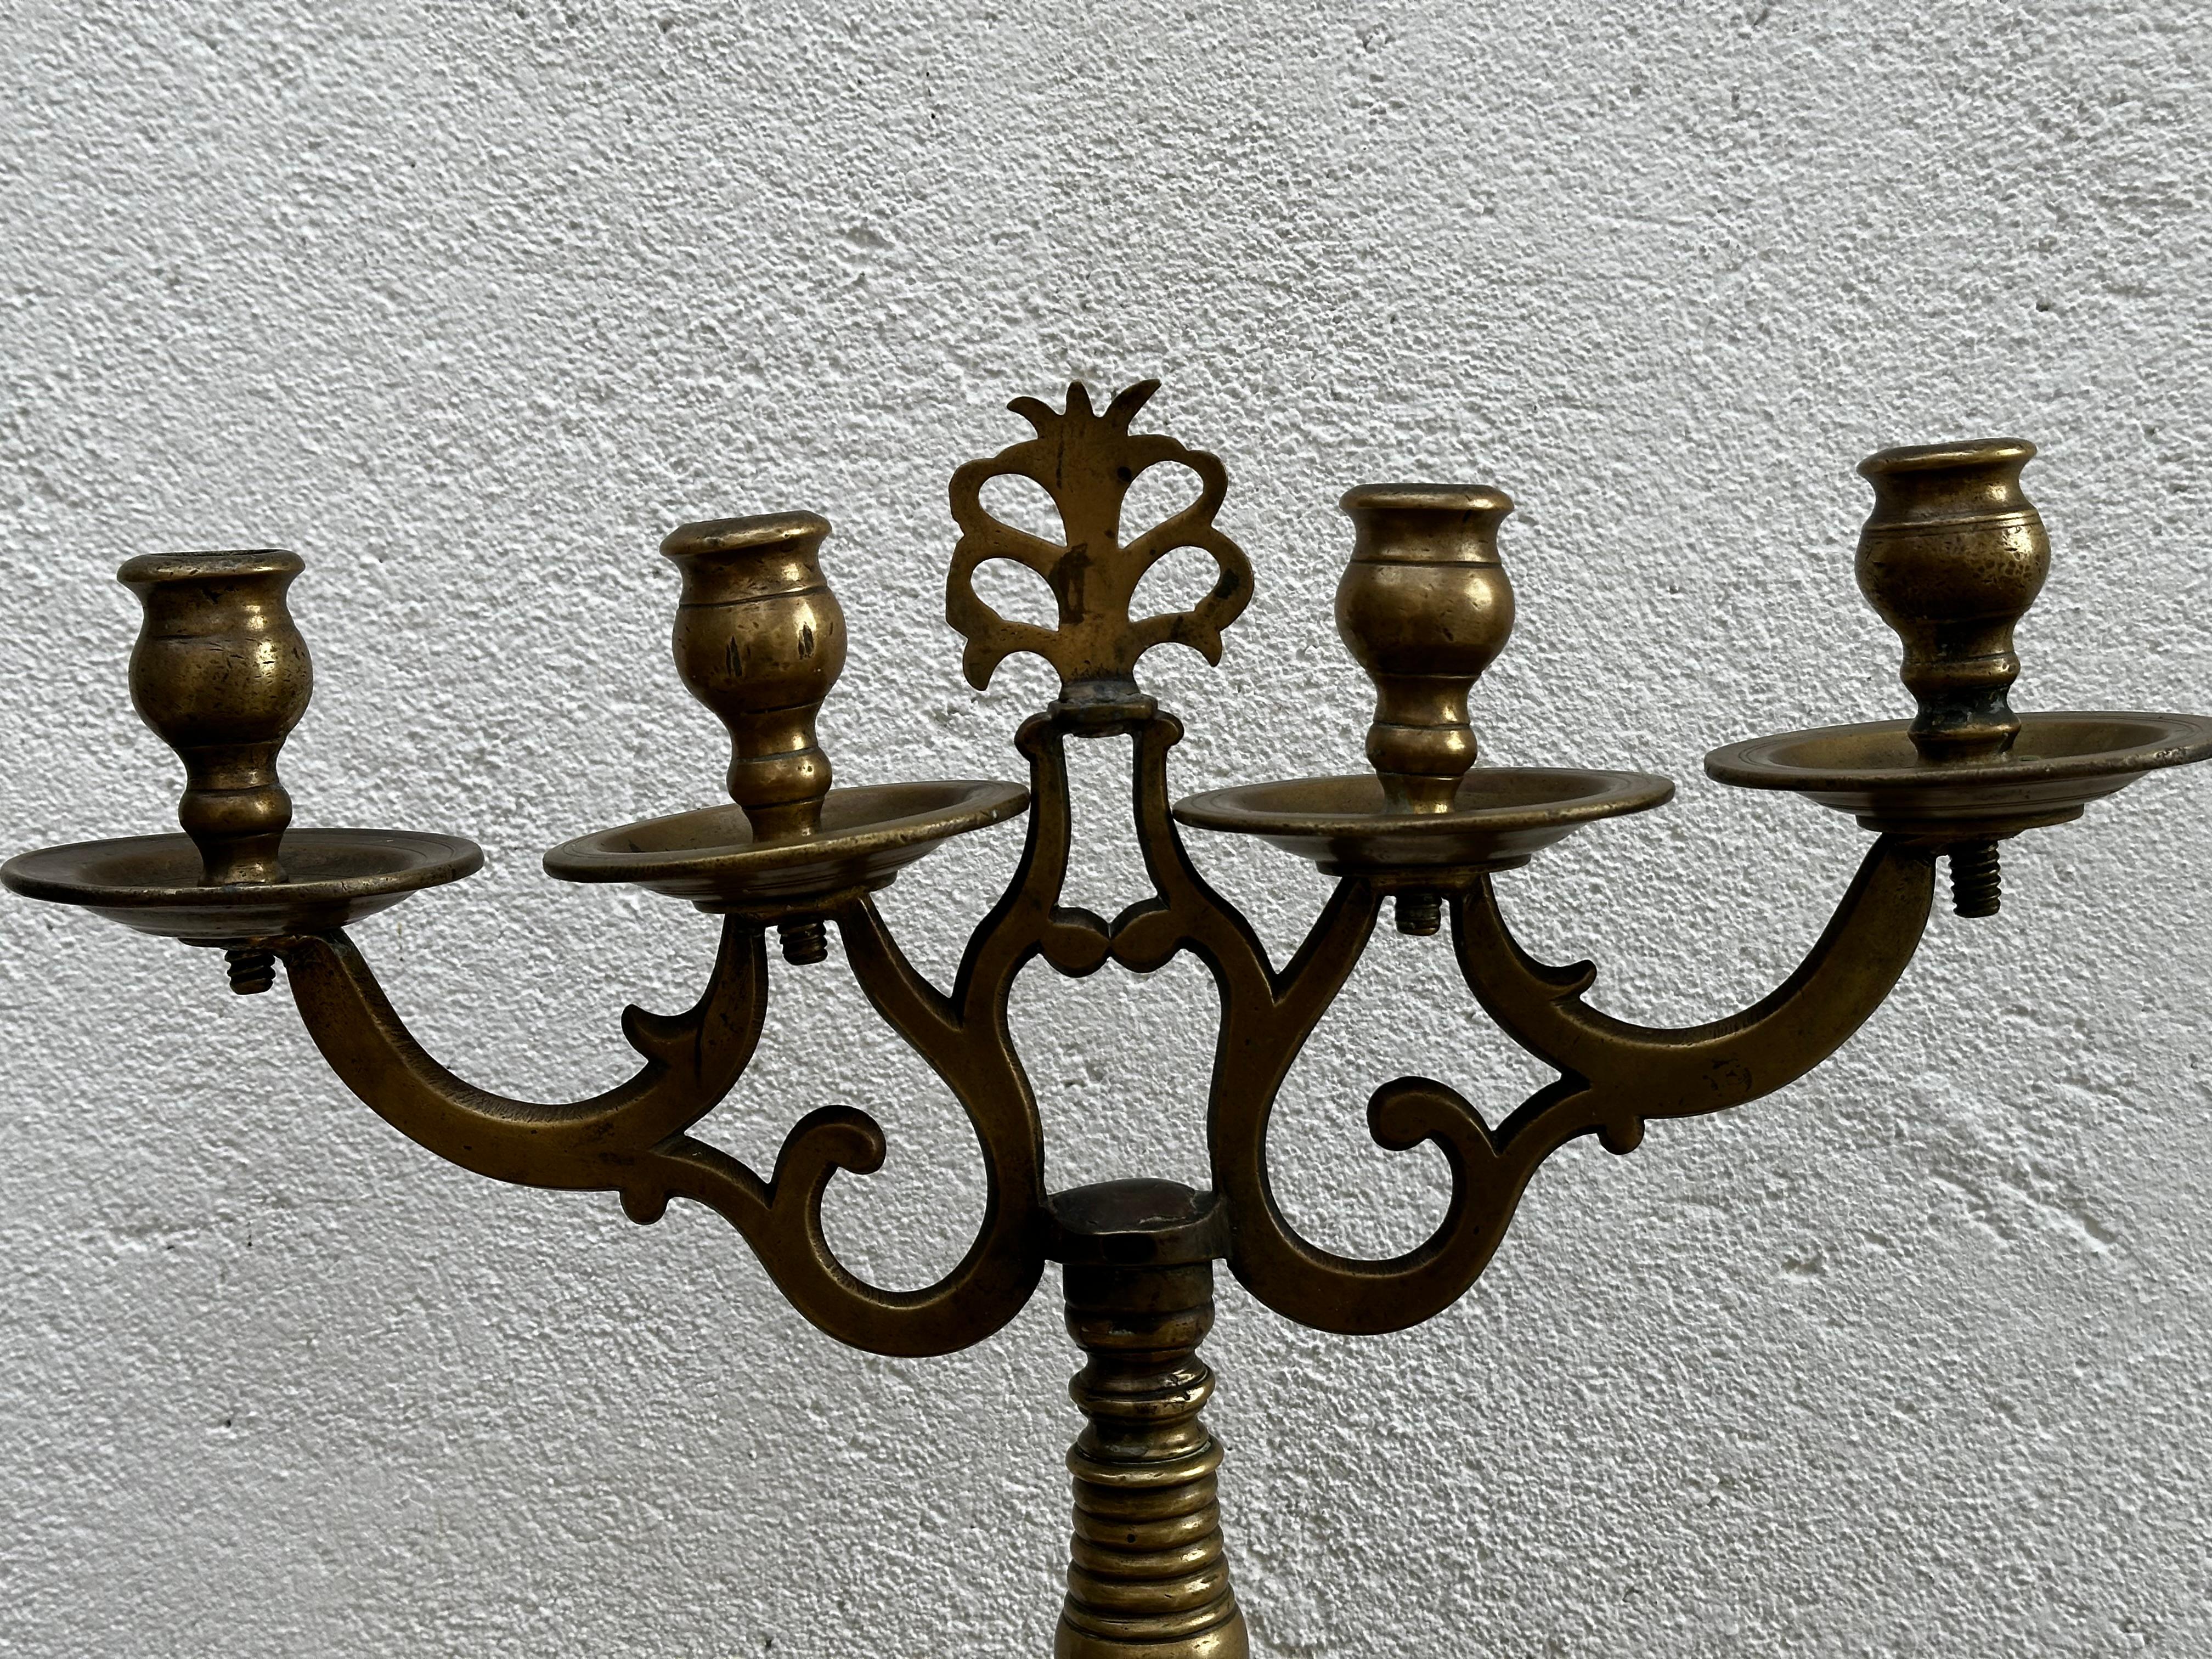 Grand candélabre, probablement fabriqué en Suède au début du 18e siècle. 
Très original, en laiton, avec quatre chandeliers.